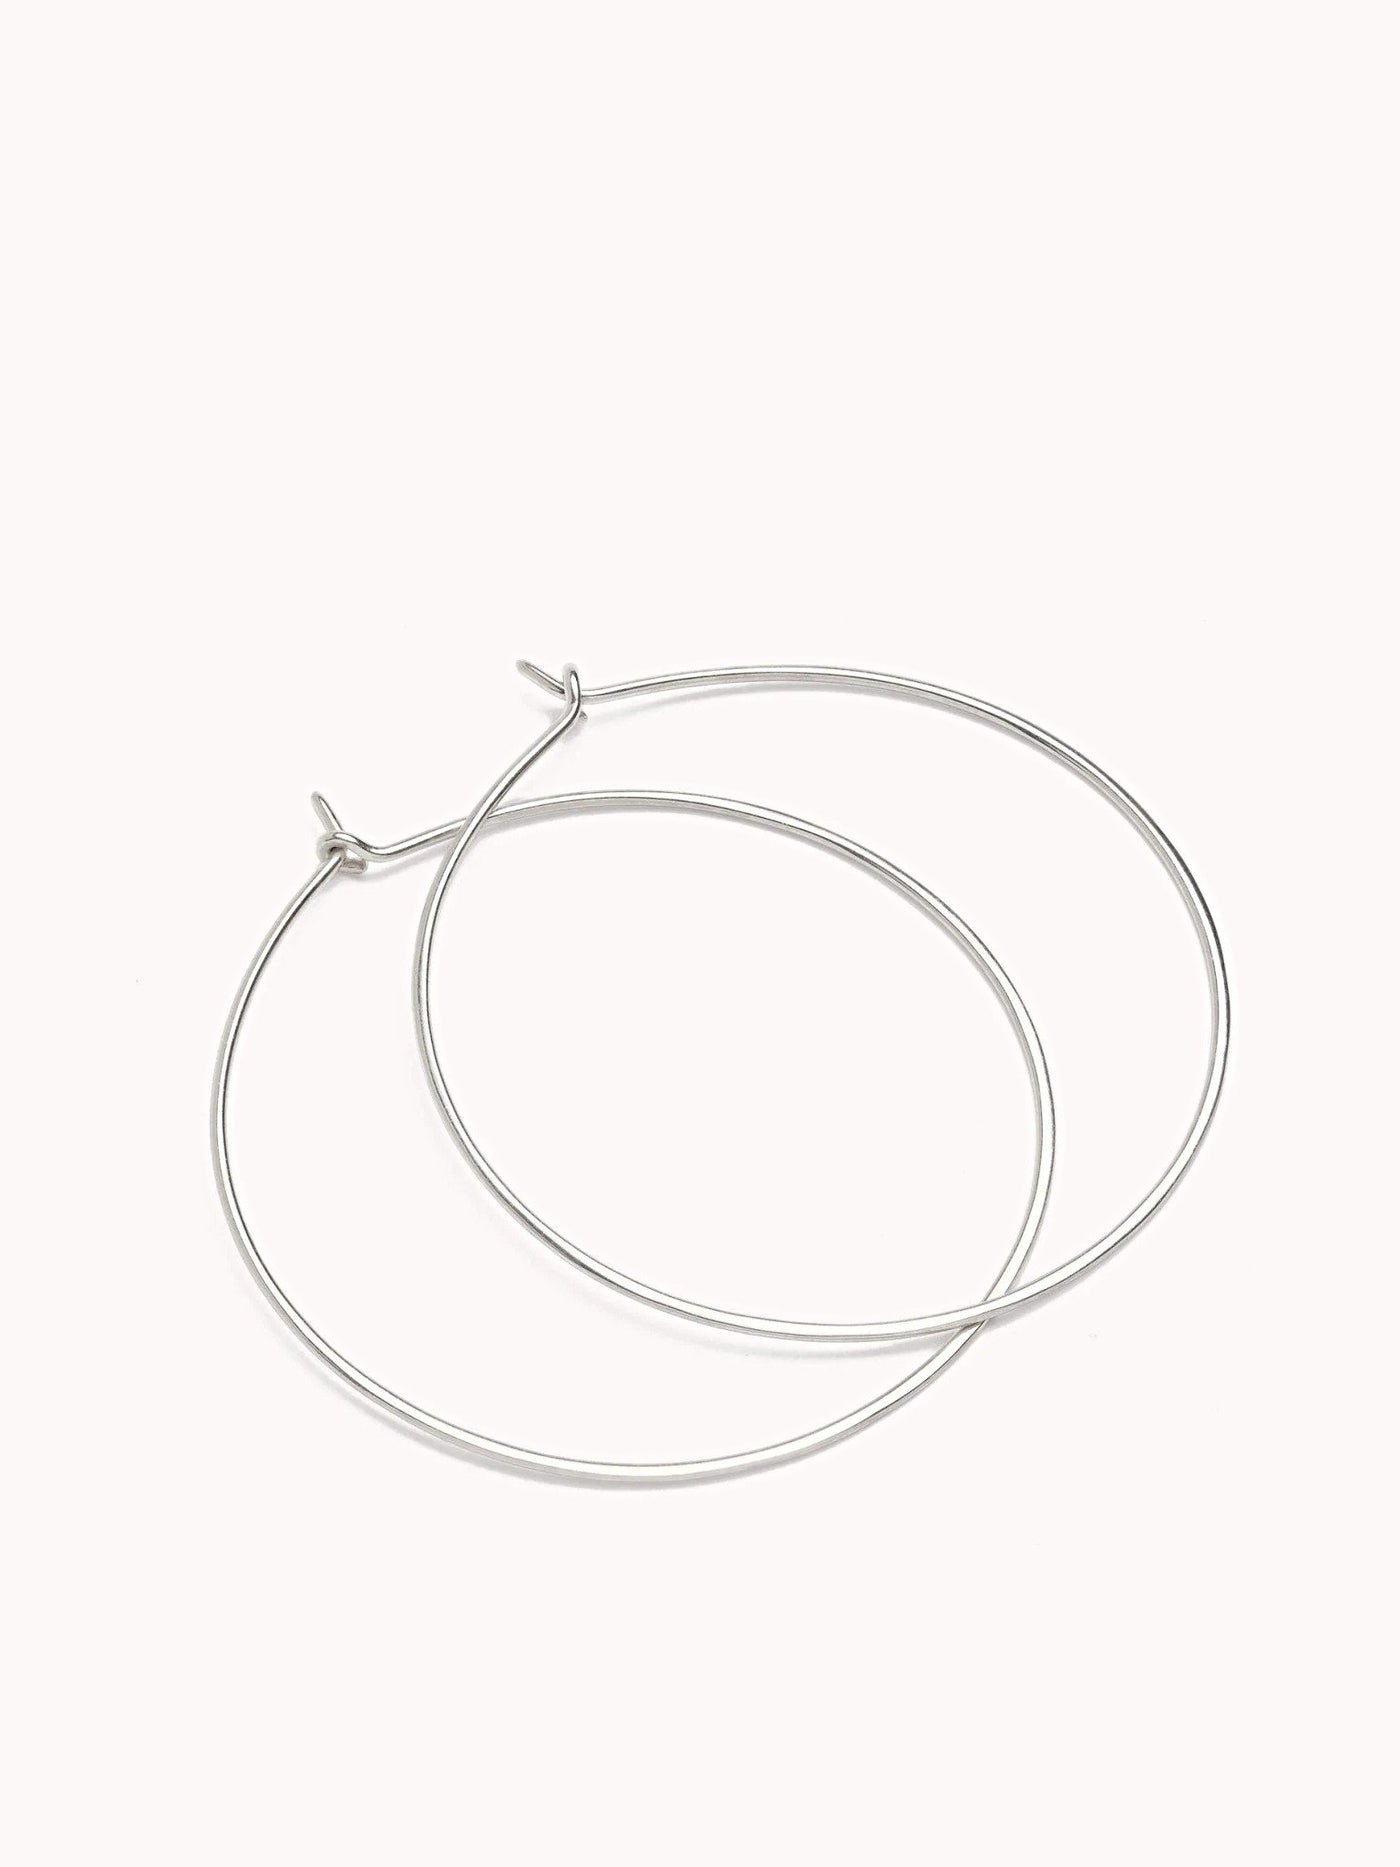 Goldie Hoop Earrings - 925 Sterling SilverBackUpItemsbirthday giftLunai Jewelry